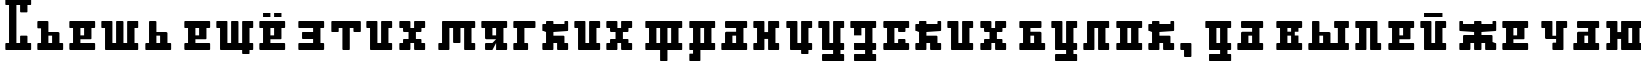 Пример написания шрифтом DS Ayaks Normal текста на русском